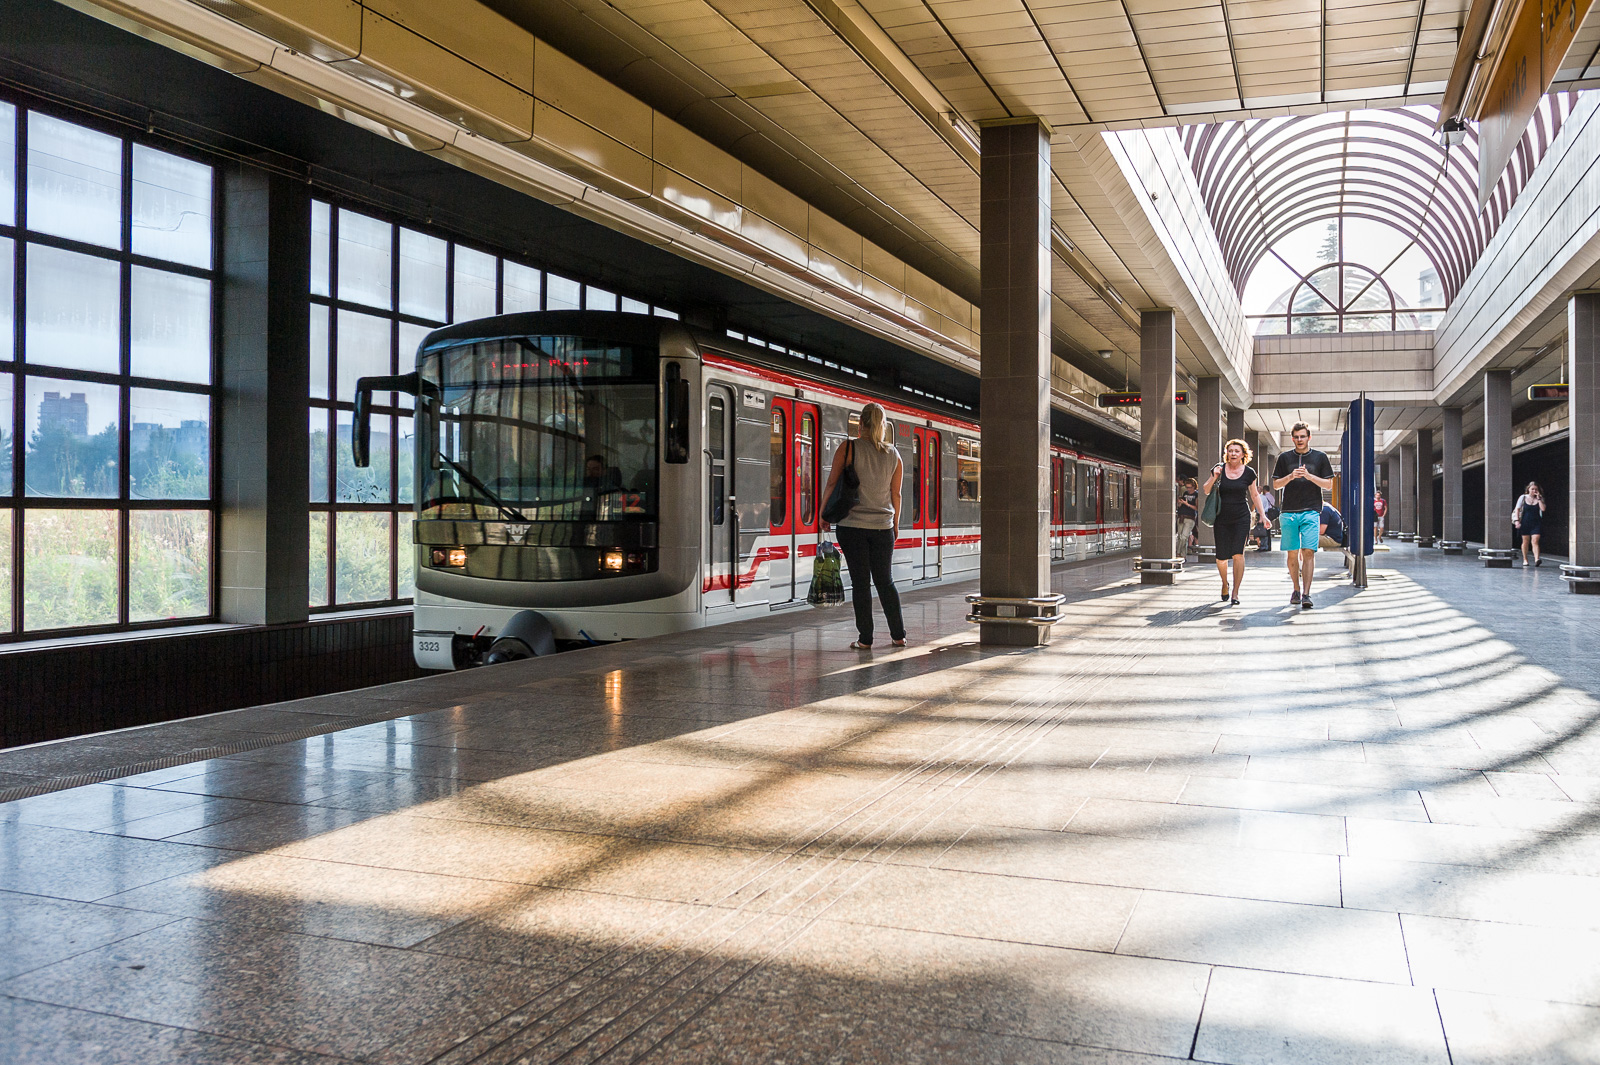 Общественный транспорт в чехии: проездные в праге, стоимость билетов на проезд в трамвае, метро и других видах транспорта